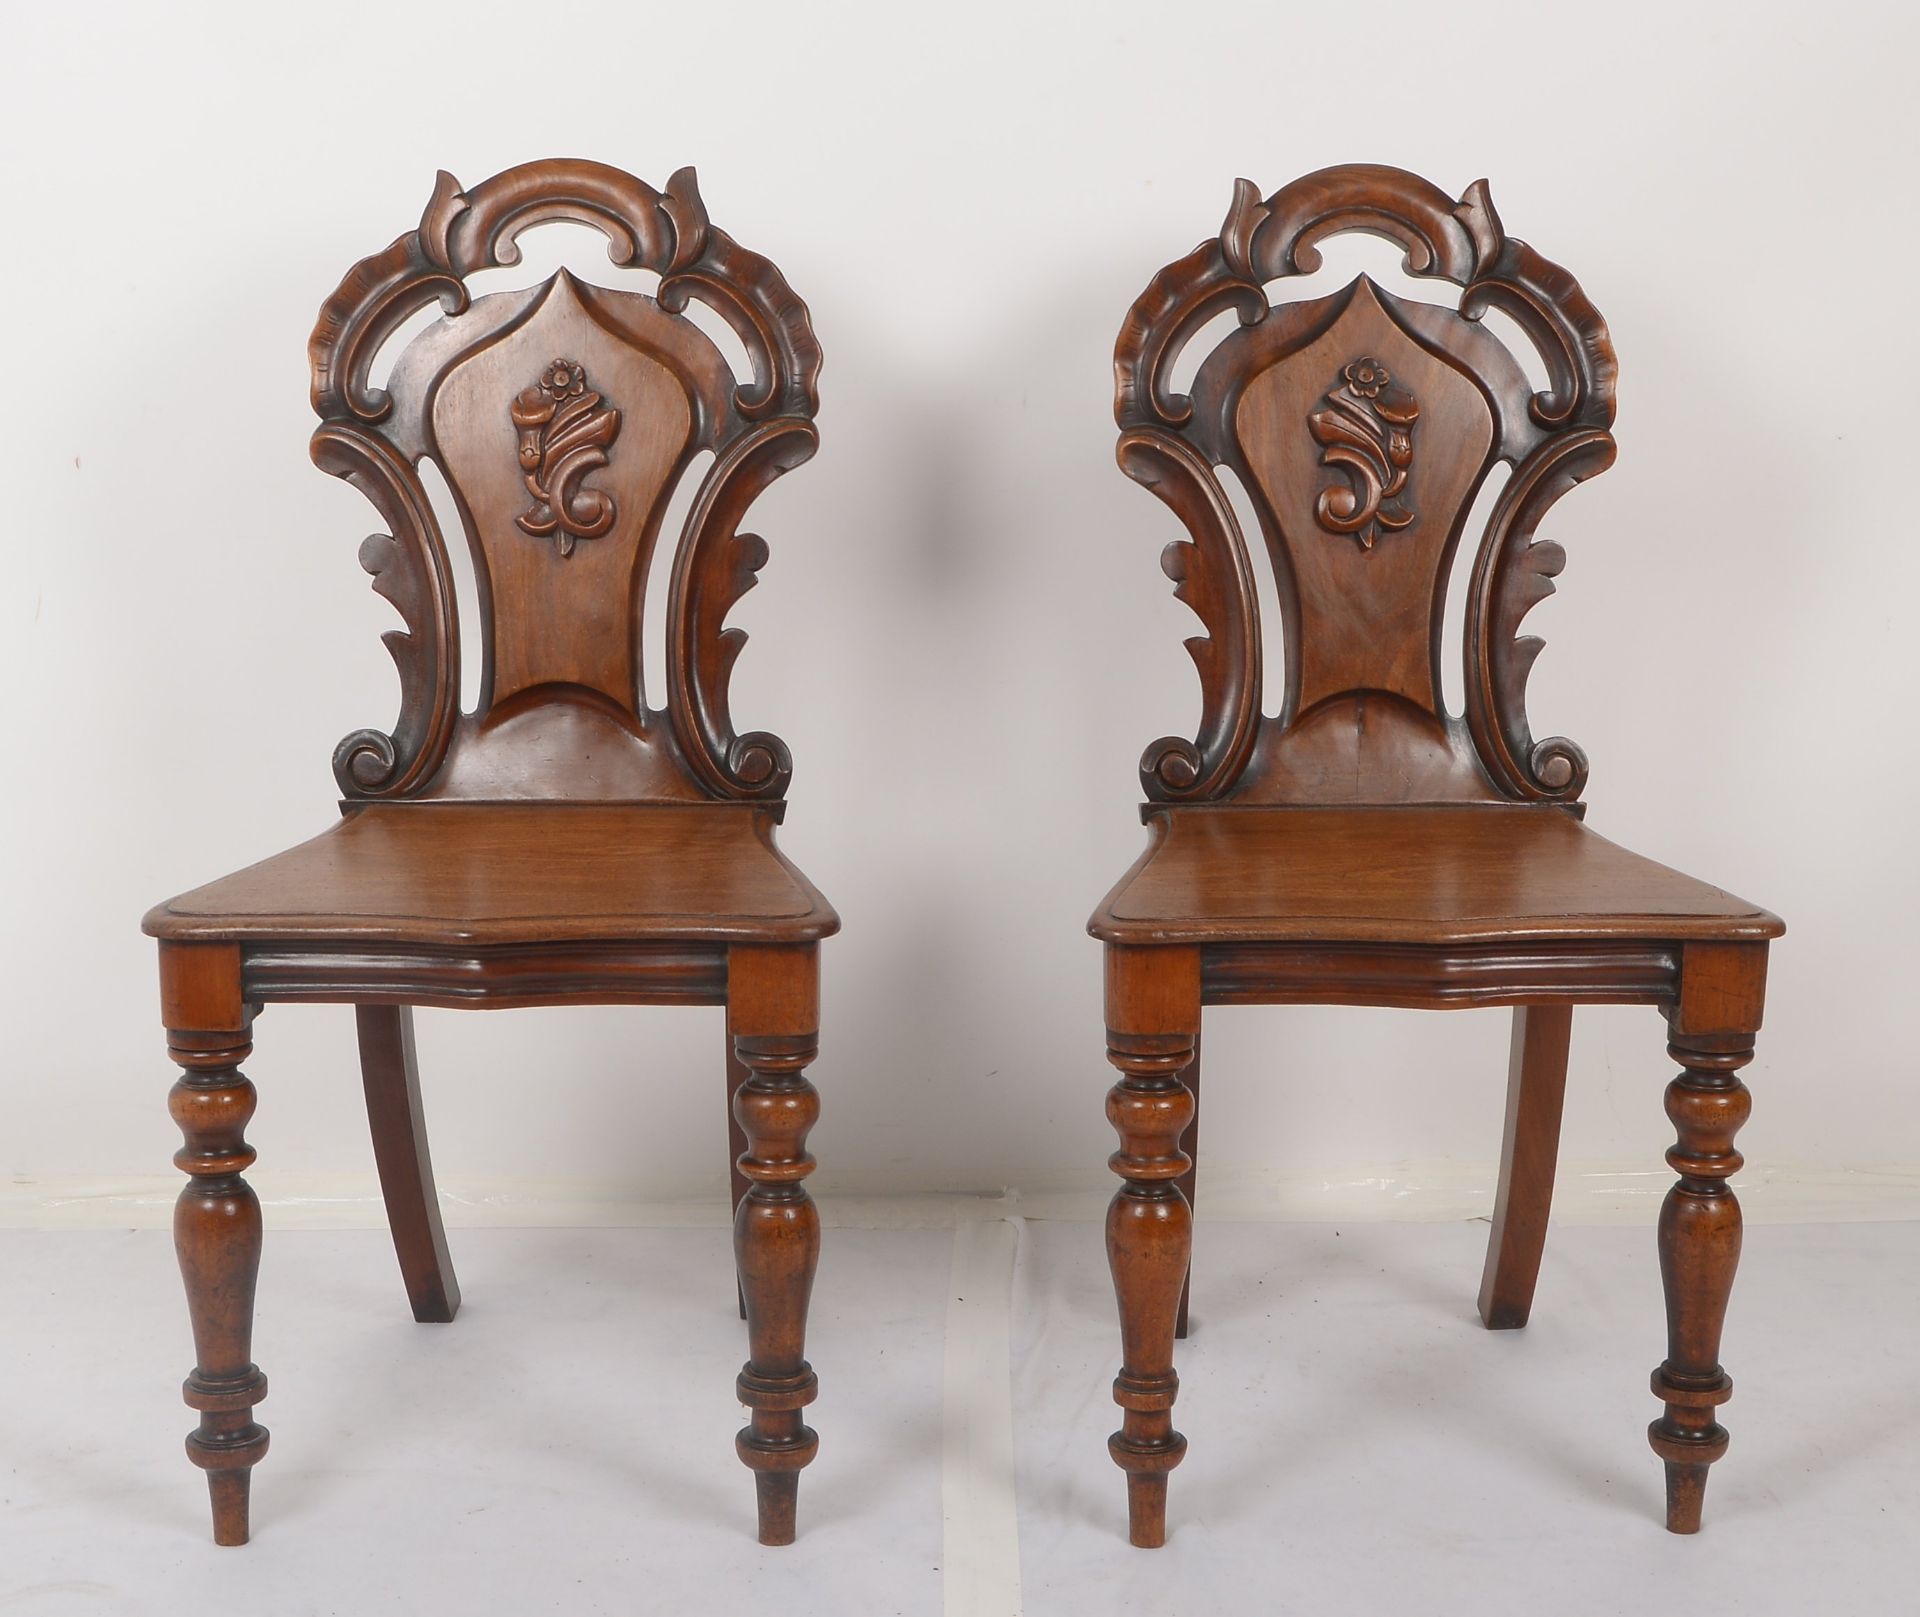 Paar Stuehle (England, viktorianisch/ca. 1880), -Hall Chairs-, Mahagoni, ausladende Rueckenlehne mit - Image 2 of 3